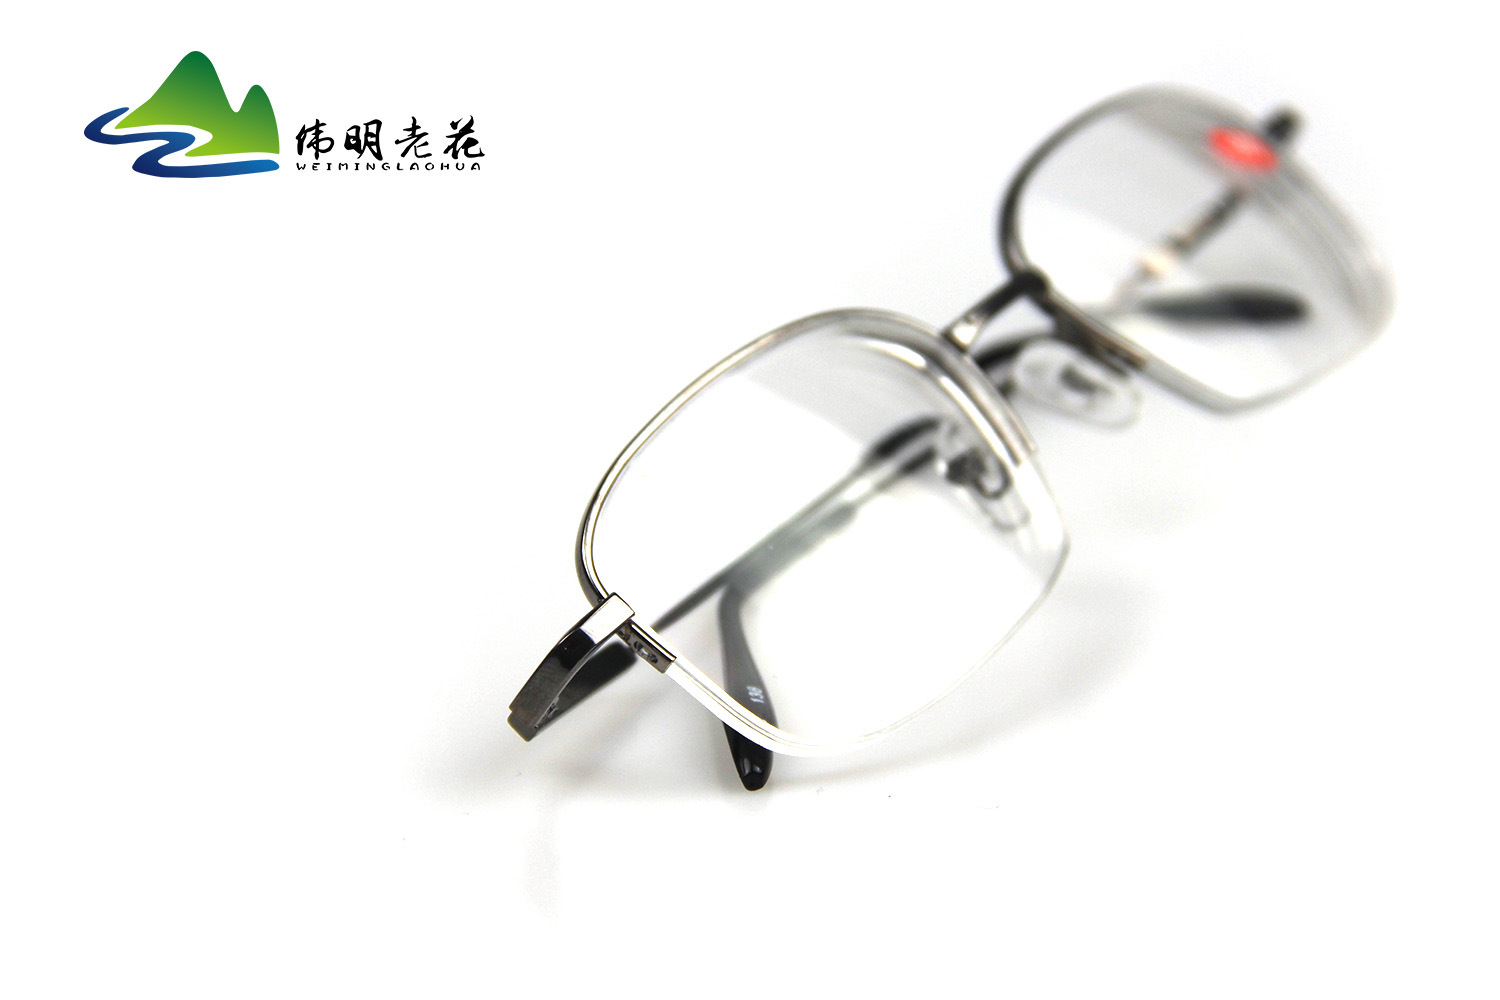 Montures de lunettes WEIMING VIEILLE FLEUR en Alliage cuivre-nickel - Ref 3140798 Image 16